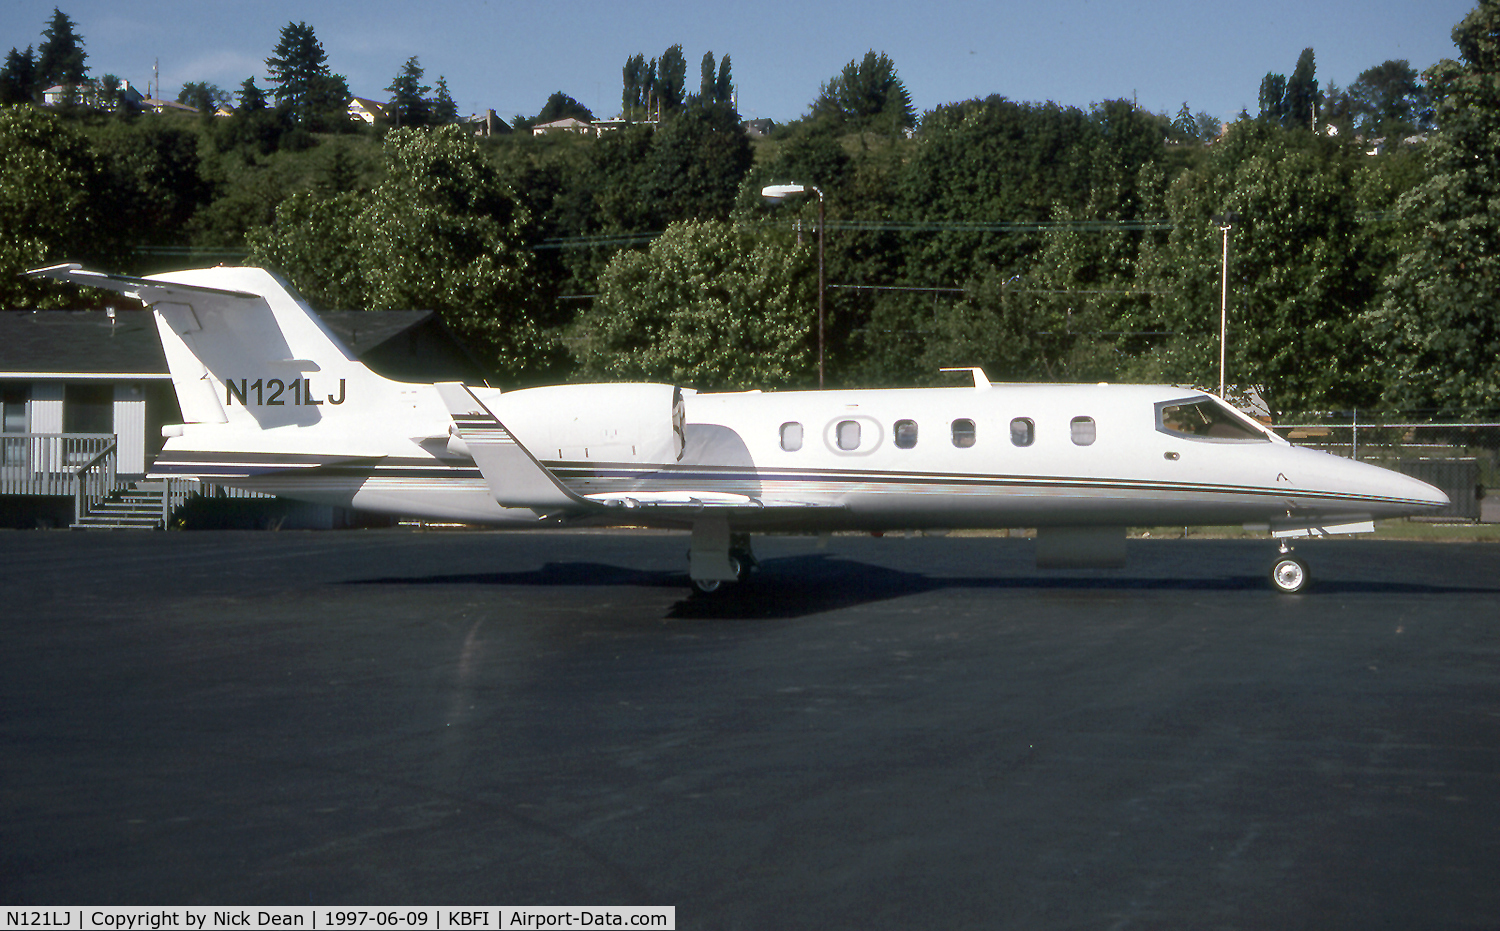 N121LJ, 1996 Learjet 31A C/N 121, KBFI